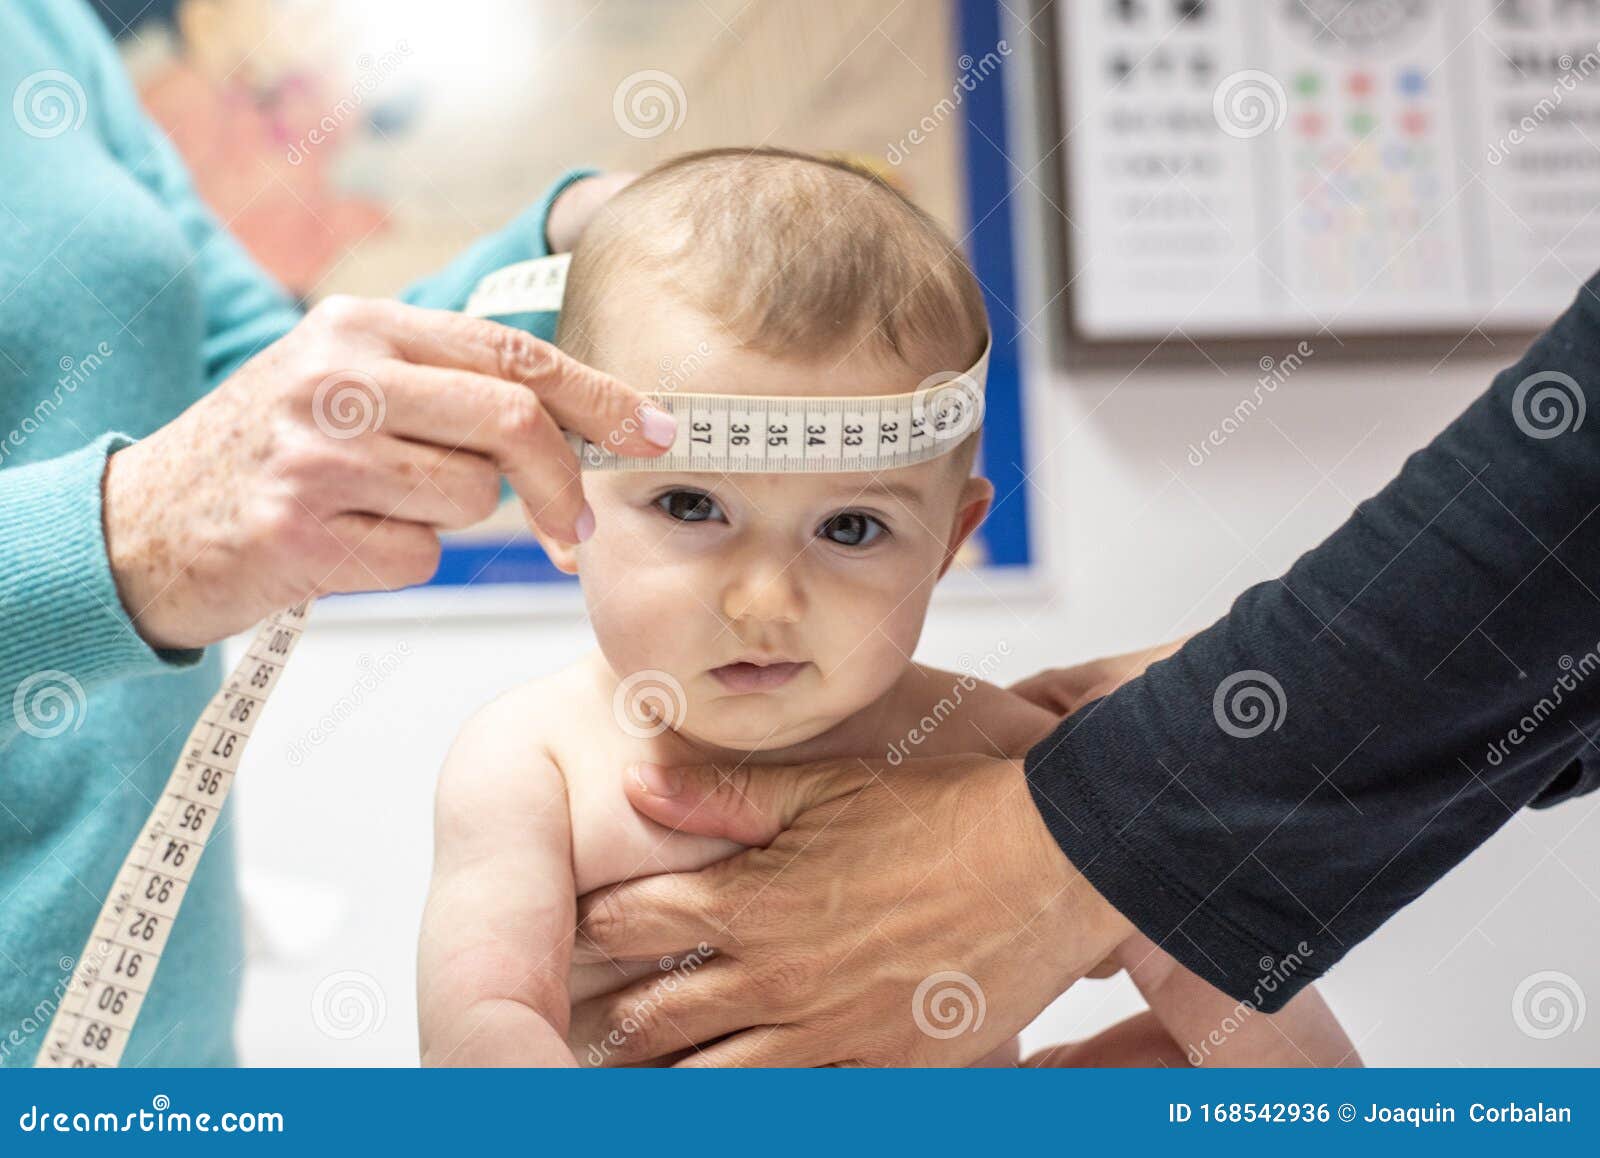 Infirmiere Mesurant Le Perimetre Cranien D Un Bebe Dans Une Clinique Avec Un Metre Ruban Photo Stock Image Du Nourrisson Mesure